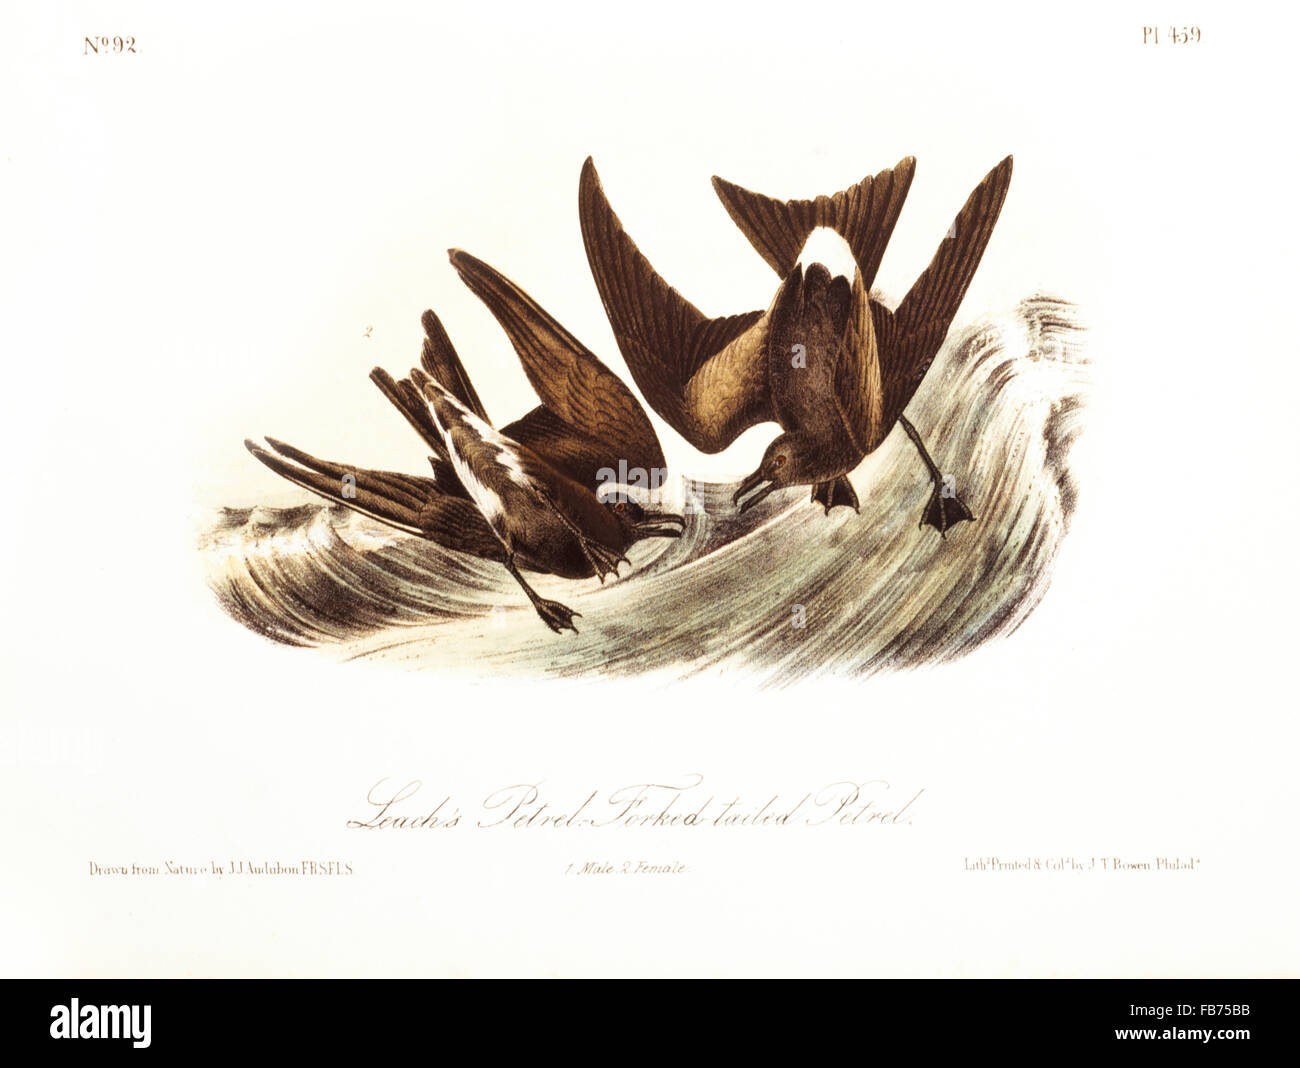 Leach's Petrel, Forked-Tailed Petrel, Hand-Colored de gravure originale par John James Audubon, vers 1827 Banque D'Images